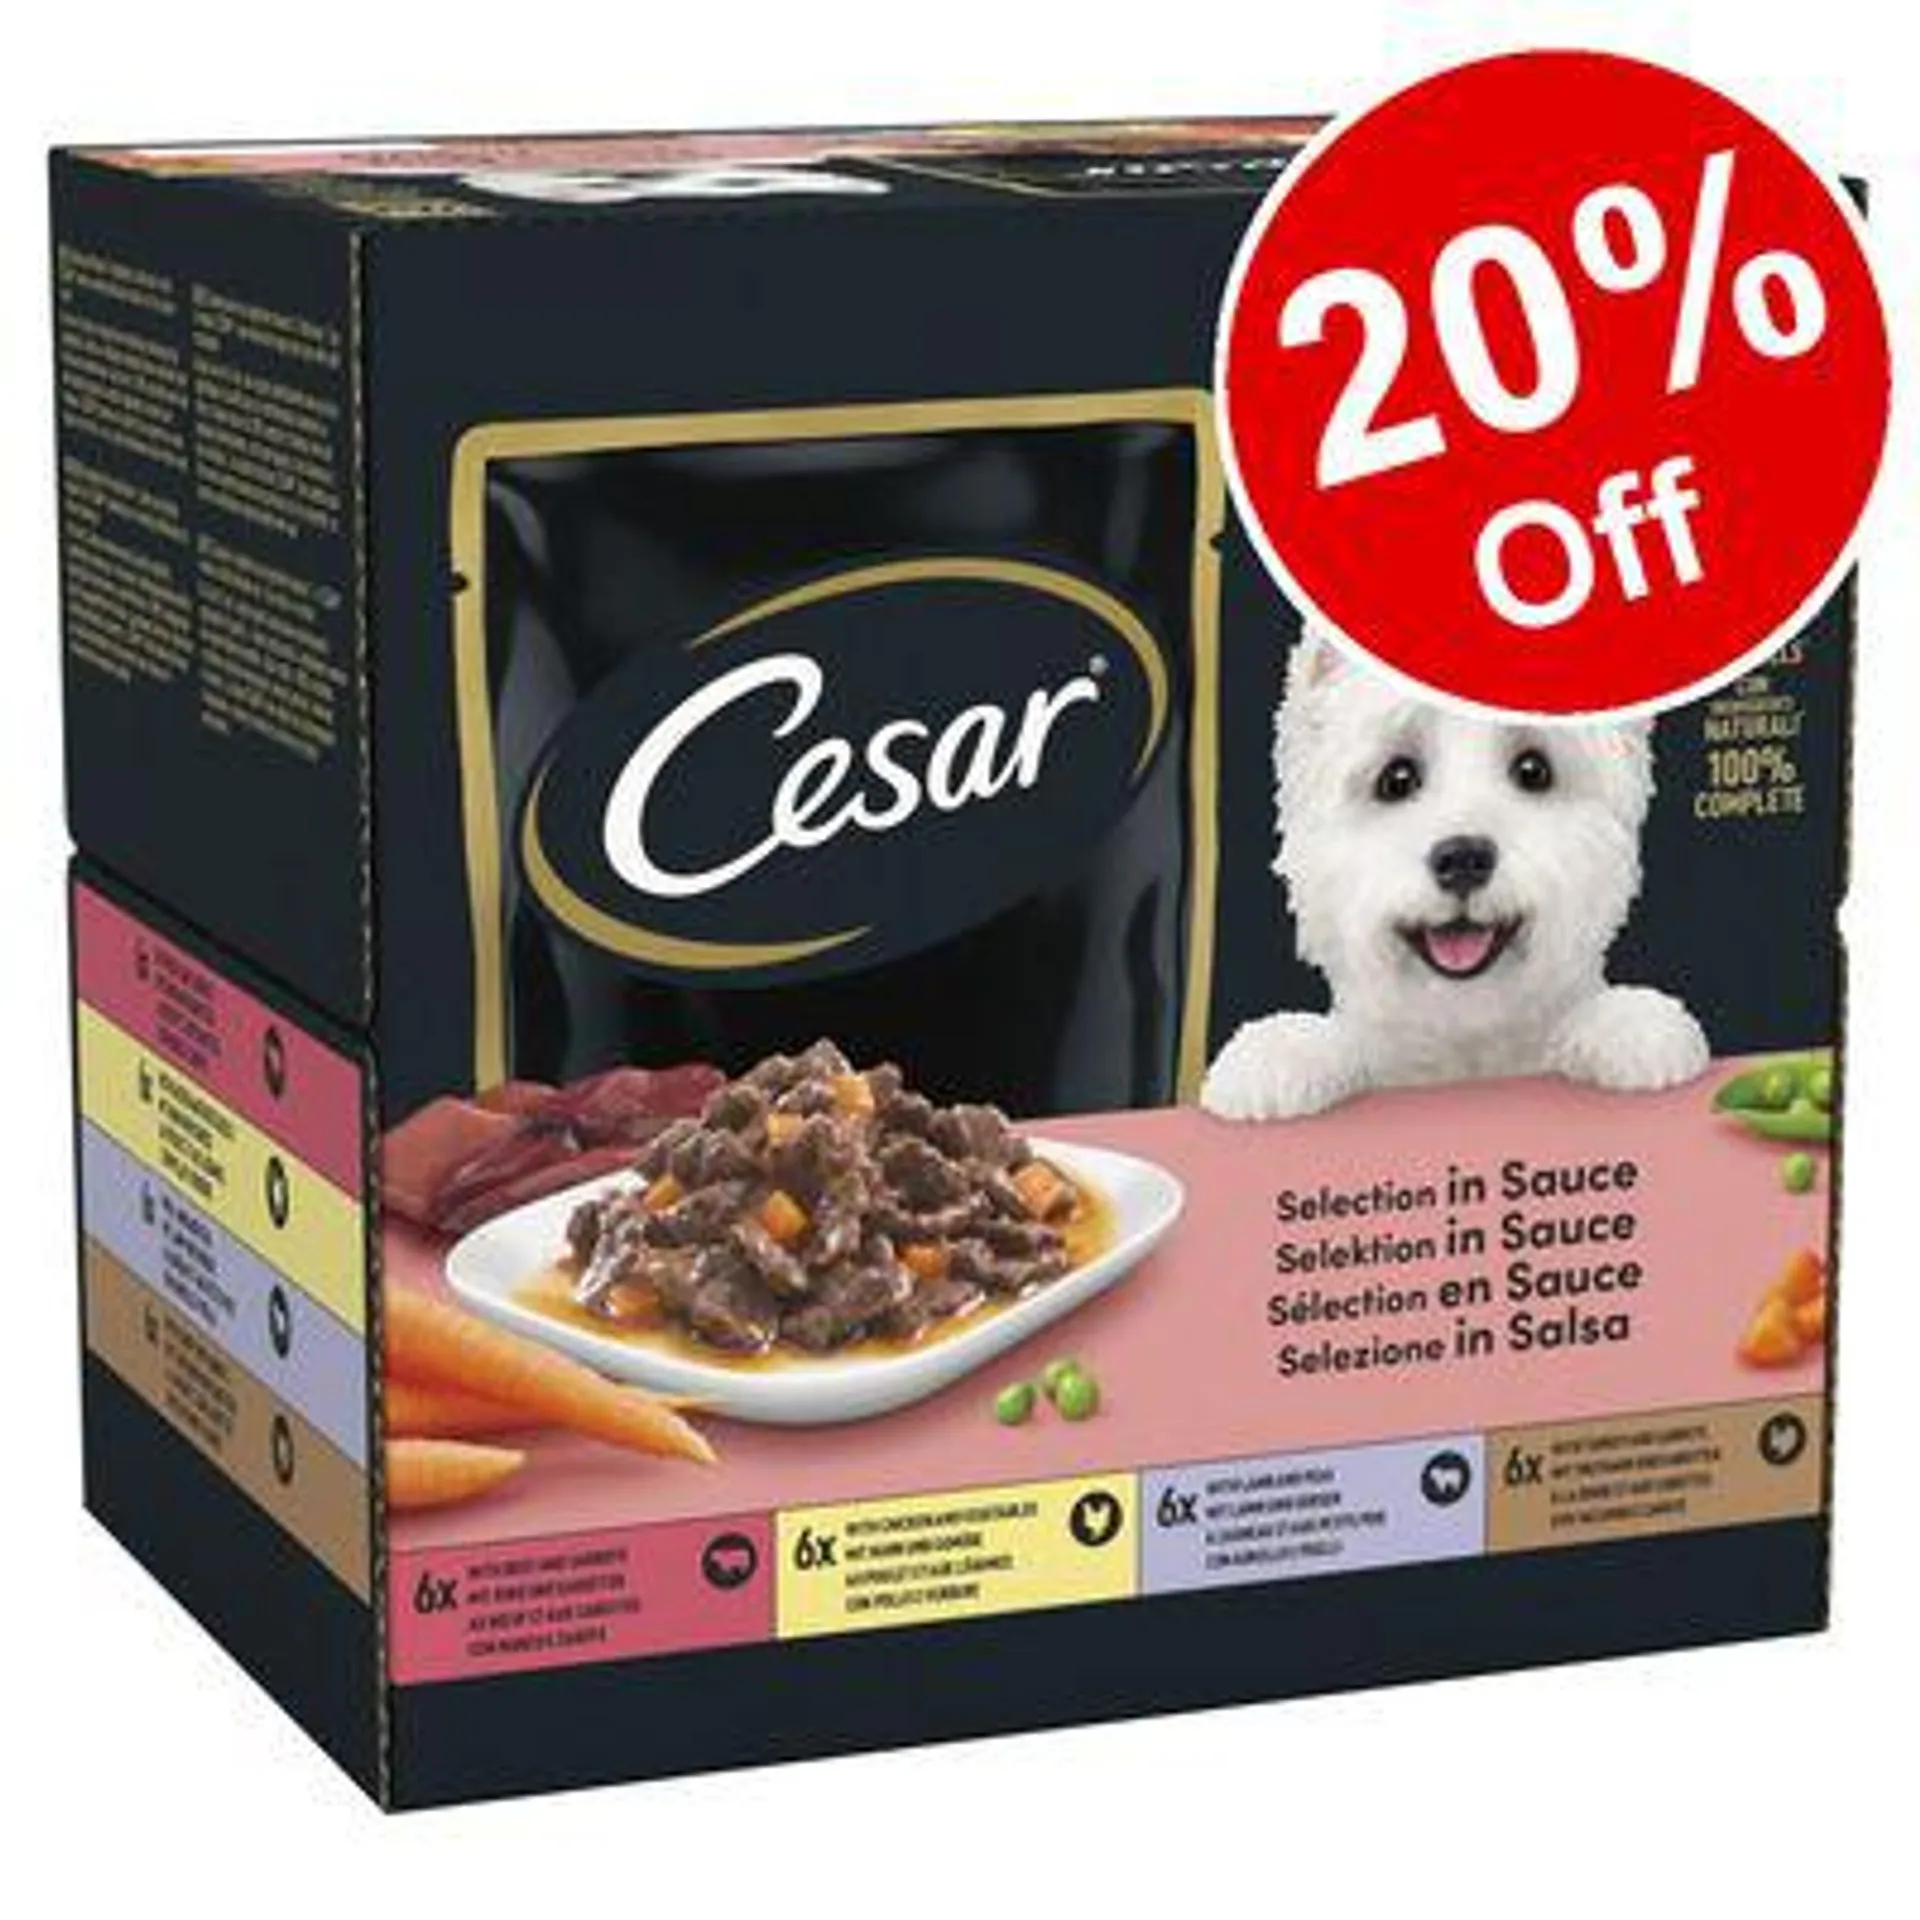 Cesar Wet Dog Food - 20% Off!*